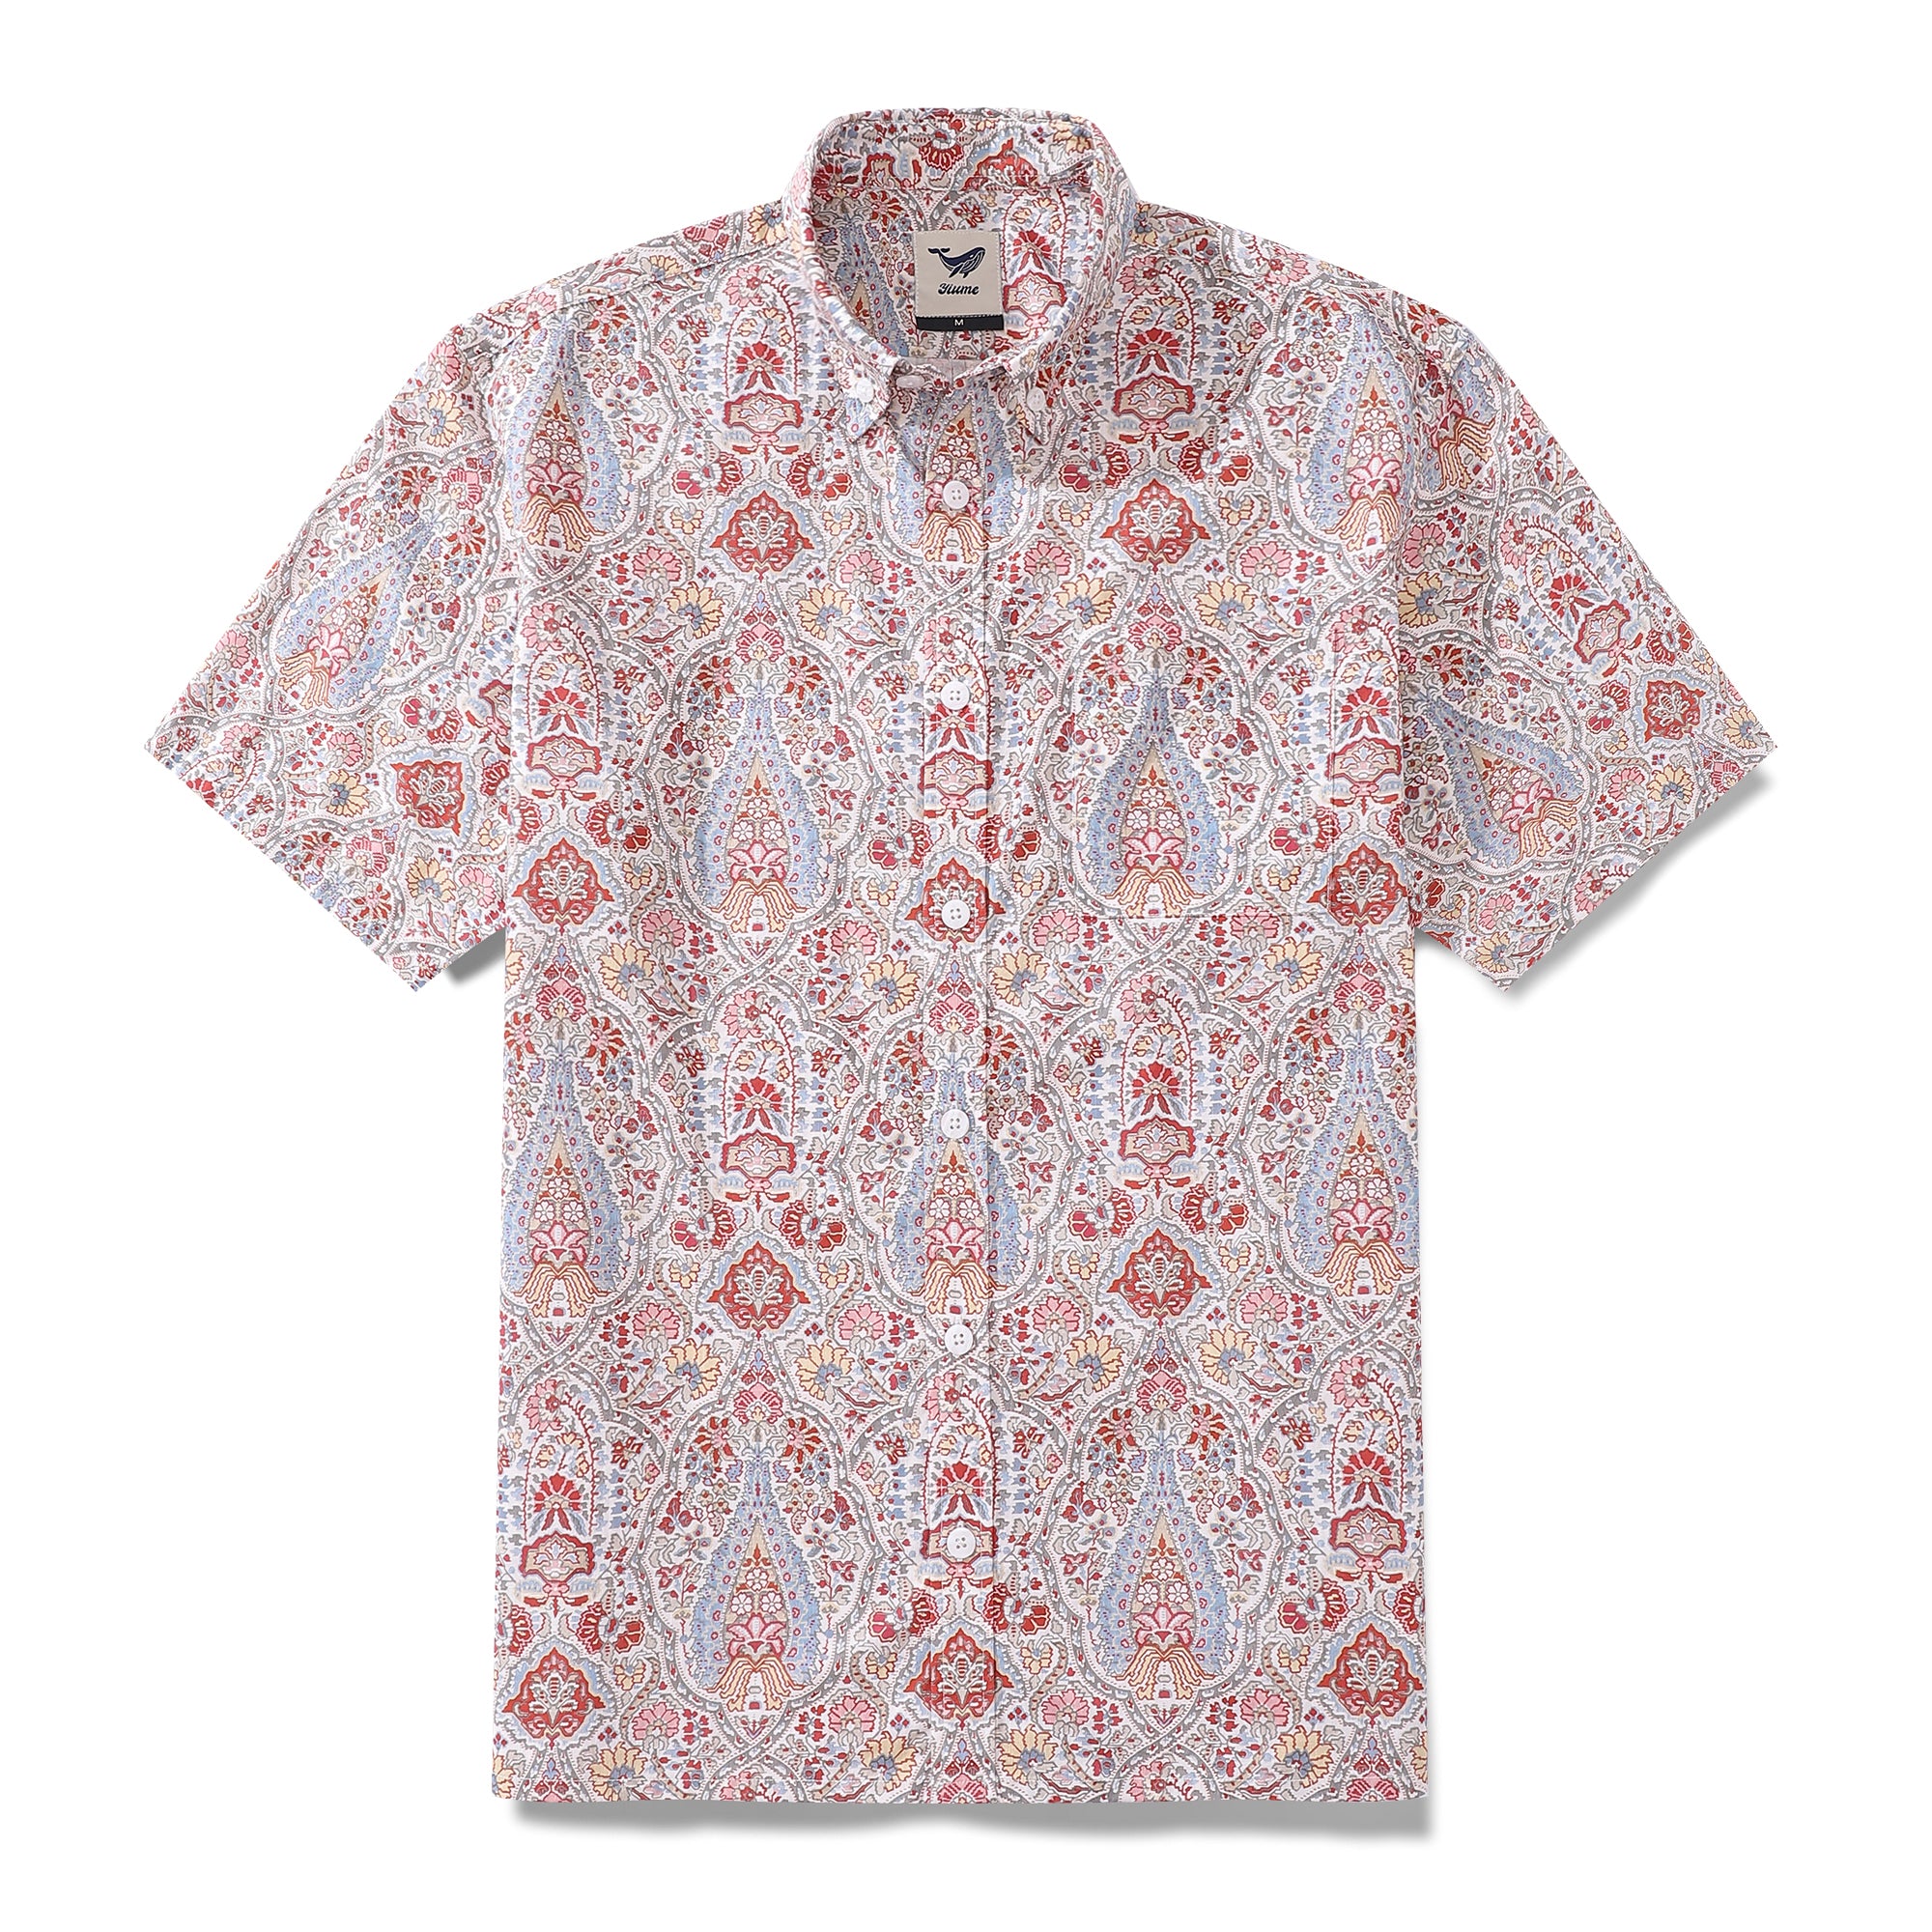 Men's Hawaiian Shirt Flower Pattern Print Cotton Button-down Short Sleeve Aloha Shirt